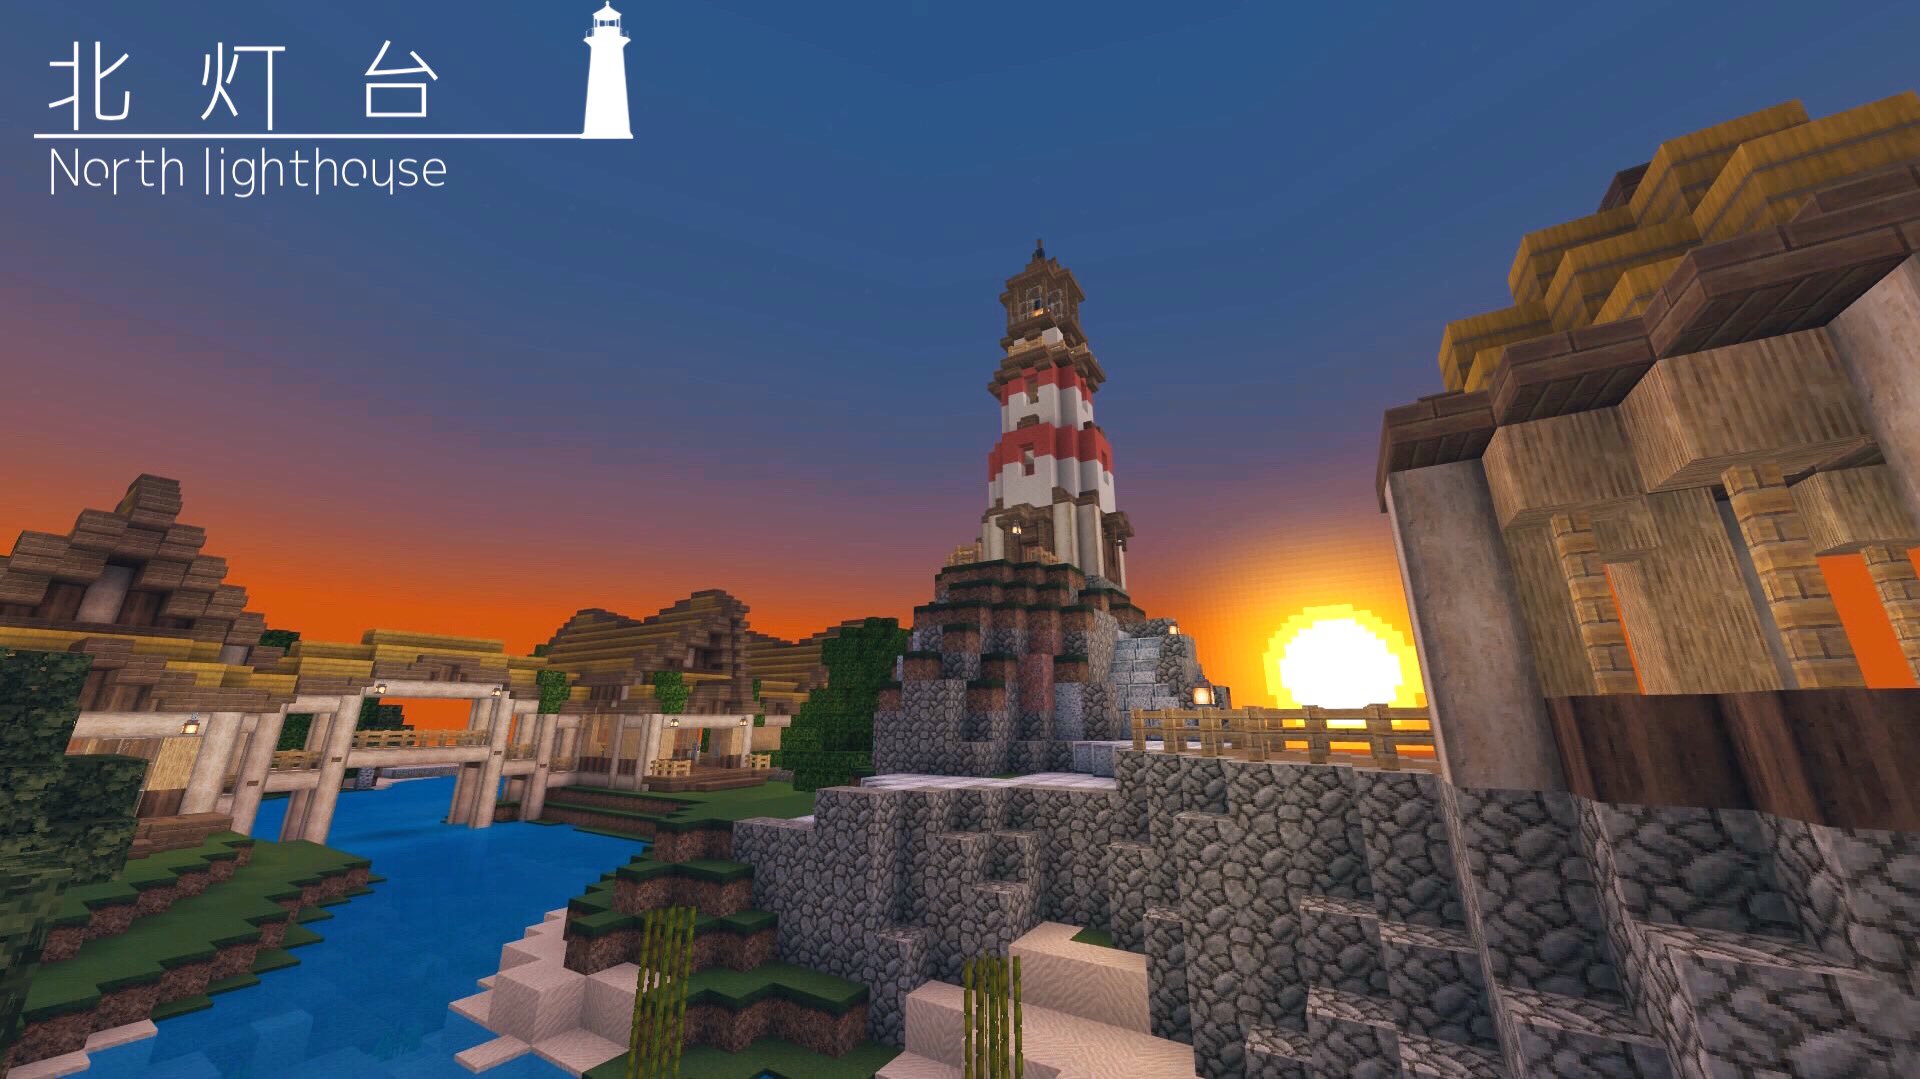 ばからcraft 北灯台が生えました あとターミナルが狭かったので増築 水中造形しました コテージ型ホテル建築中 Minecraft建築コミュ Minecraft マインクラフト マイクラ T Co I9huhs8jkh Twitter